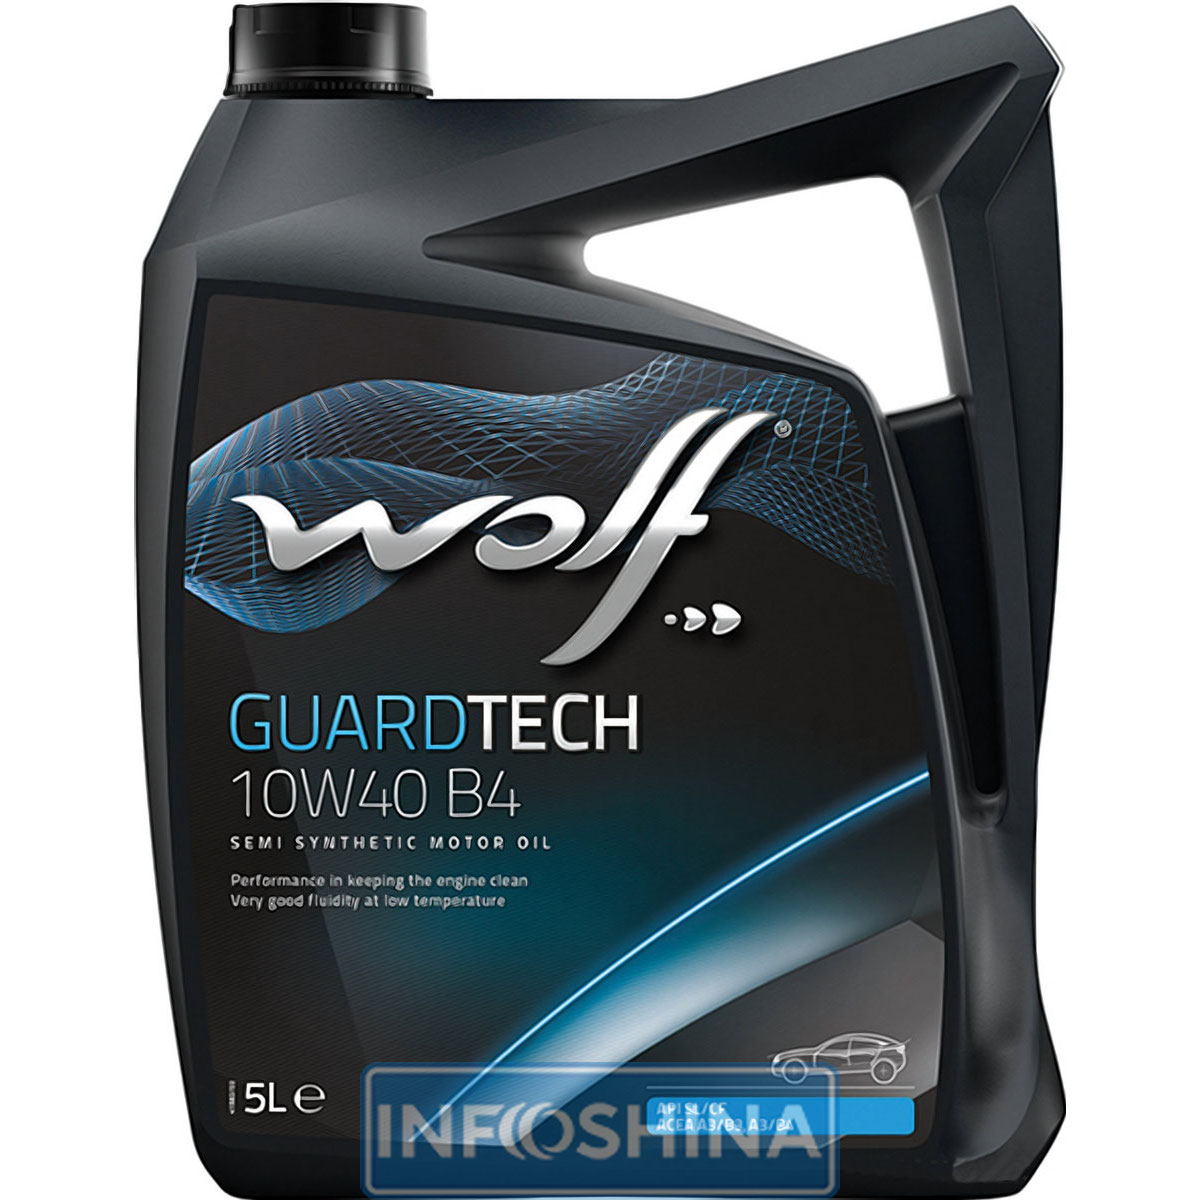 Wolf Guardtech Diesel 10W-40 B4